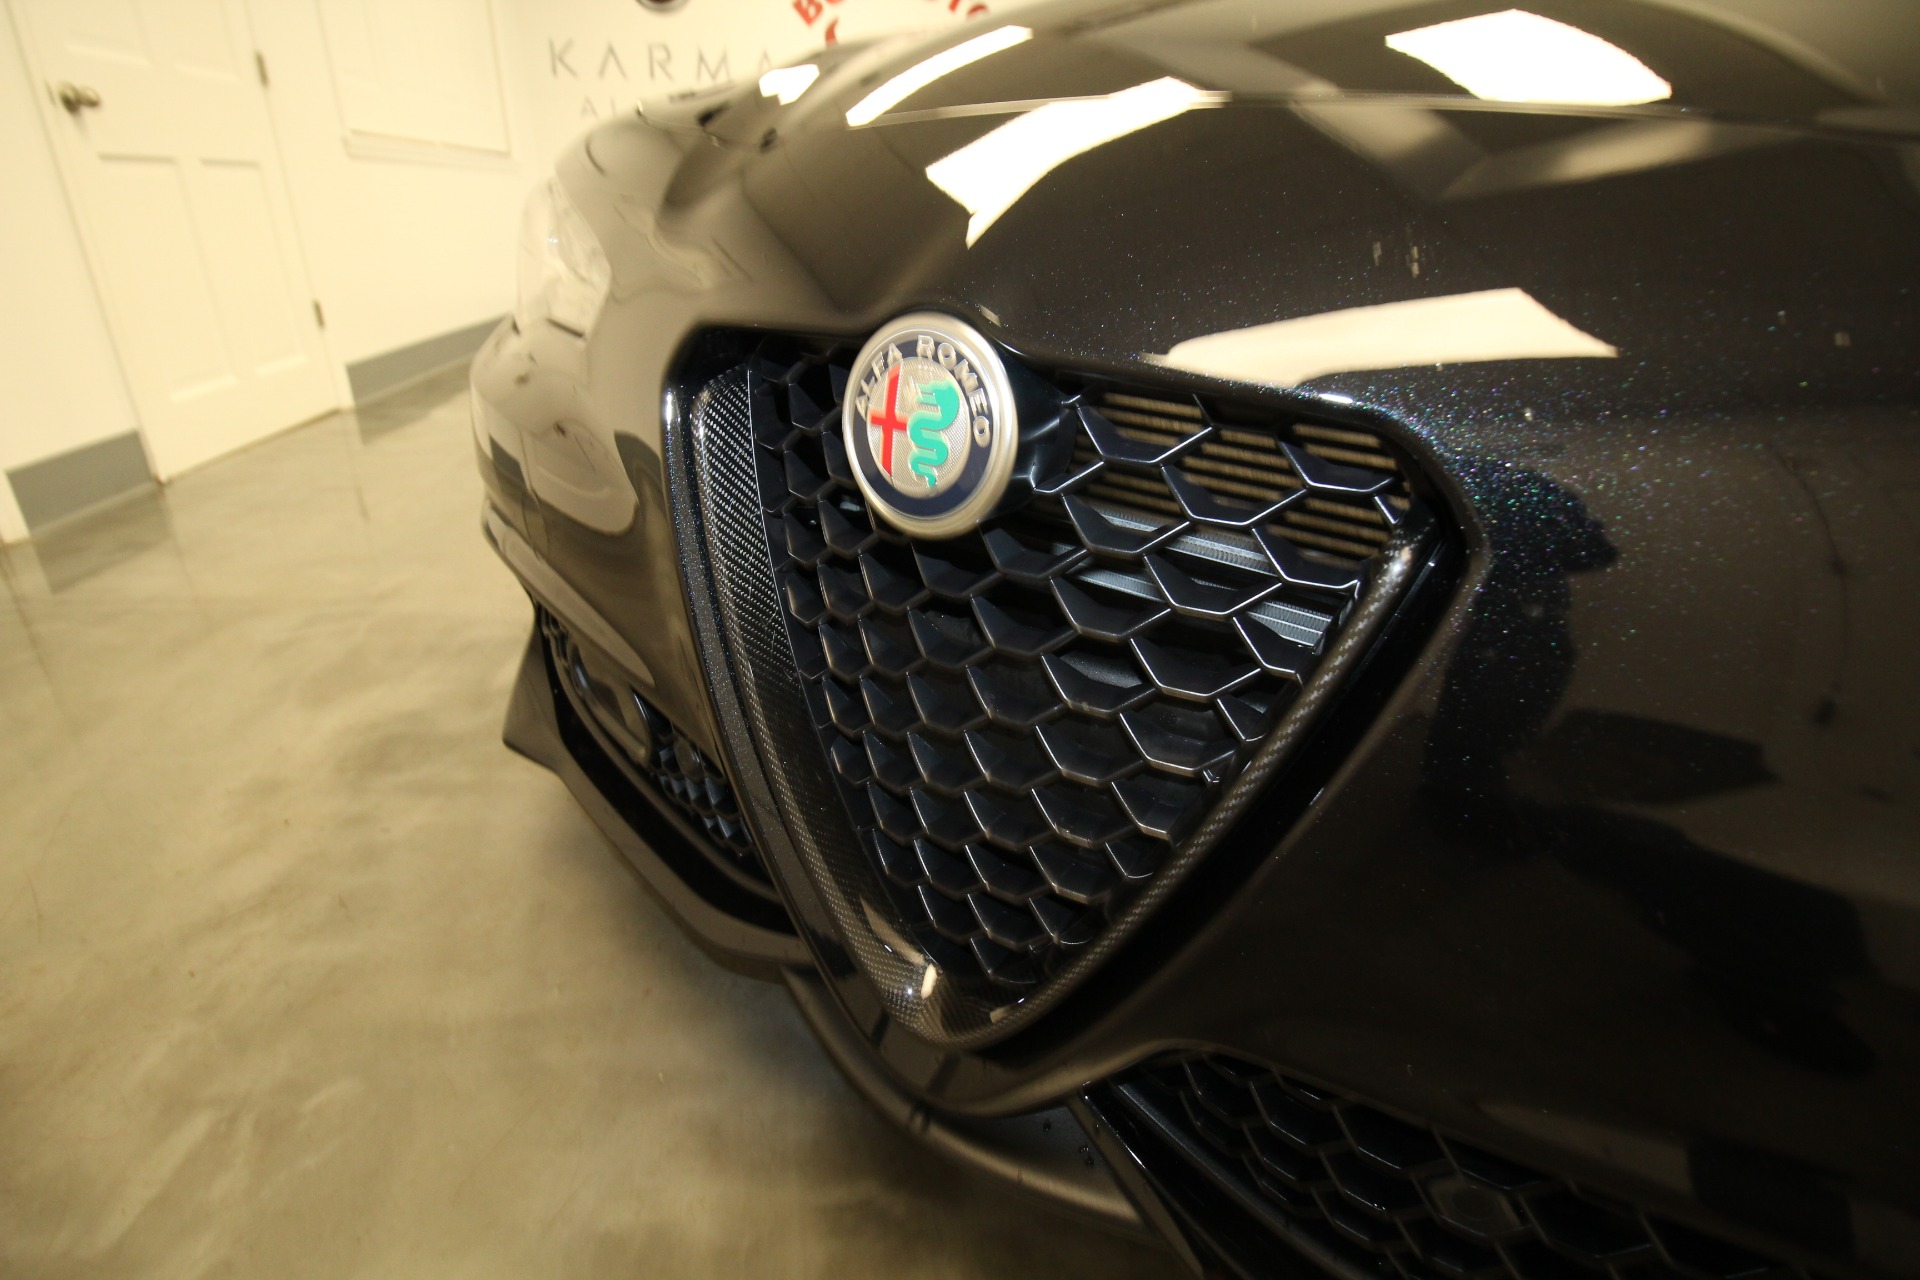 New 2023 BLACK Alfa Romeo GIULIA ESTREMA Estrema AWD | Albany, NY